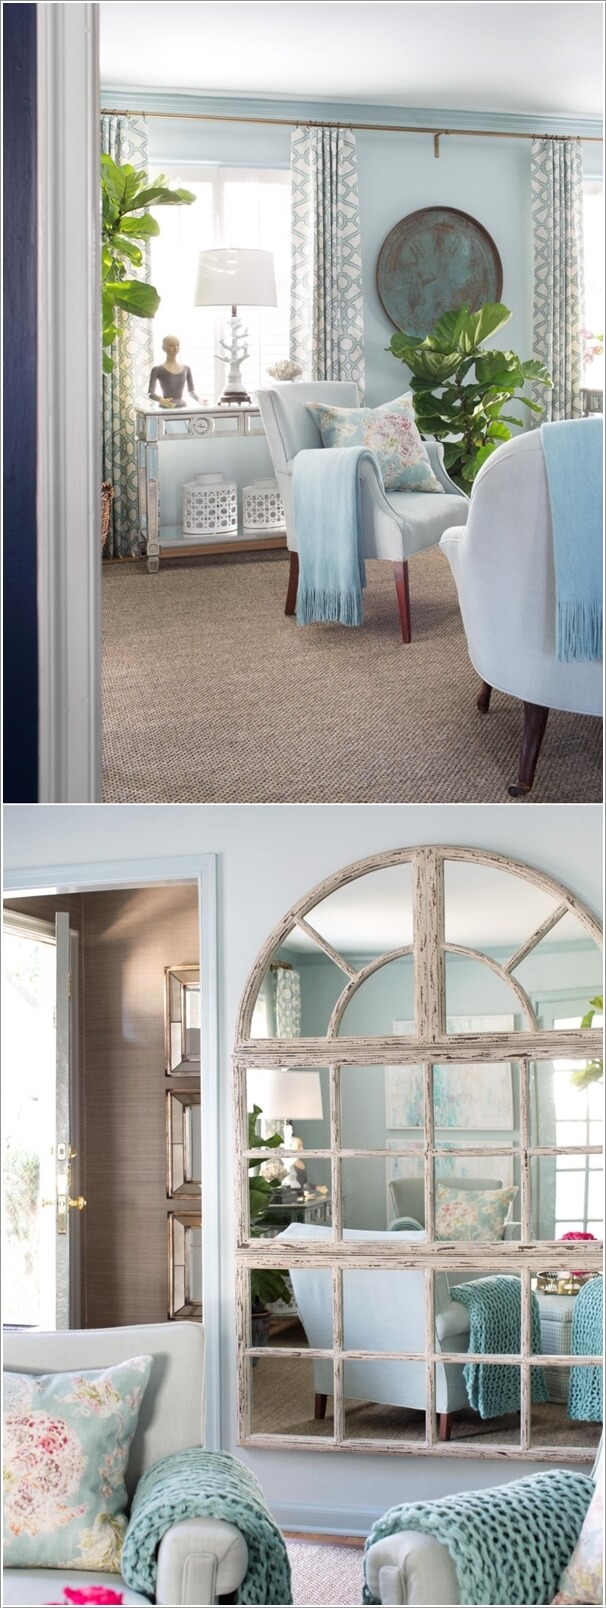 
Thay vì trang trí một phòng khách lòe loẹt, bạn hãy chọn những màu sắc nhẹ nhàng cho nội thất phòng khách nhỏ.

 
